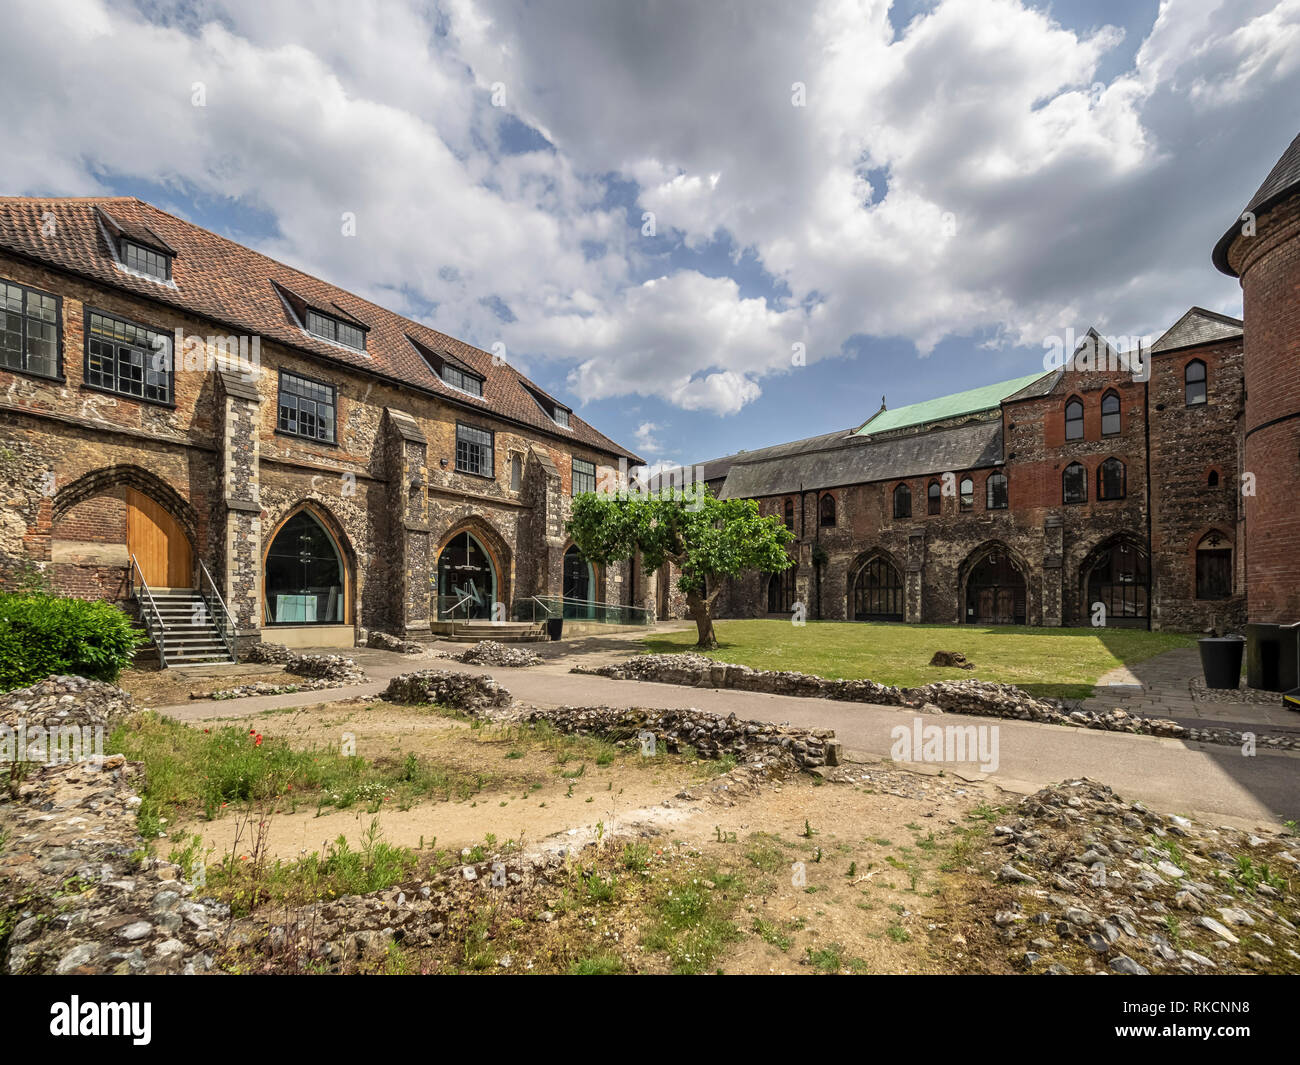 NORWICH, NORFOLK, Großbritannien - 13. JUNI 2018: Außenansicht des mittelalterlichen Friarks im Zentrum von Norwich, das jetzt von der Norwich University of the Arts genutzt wird Stockfoto